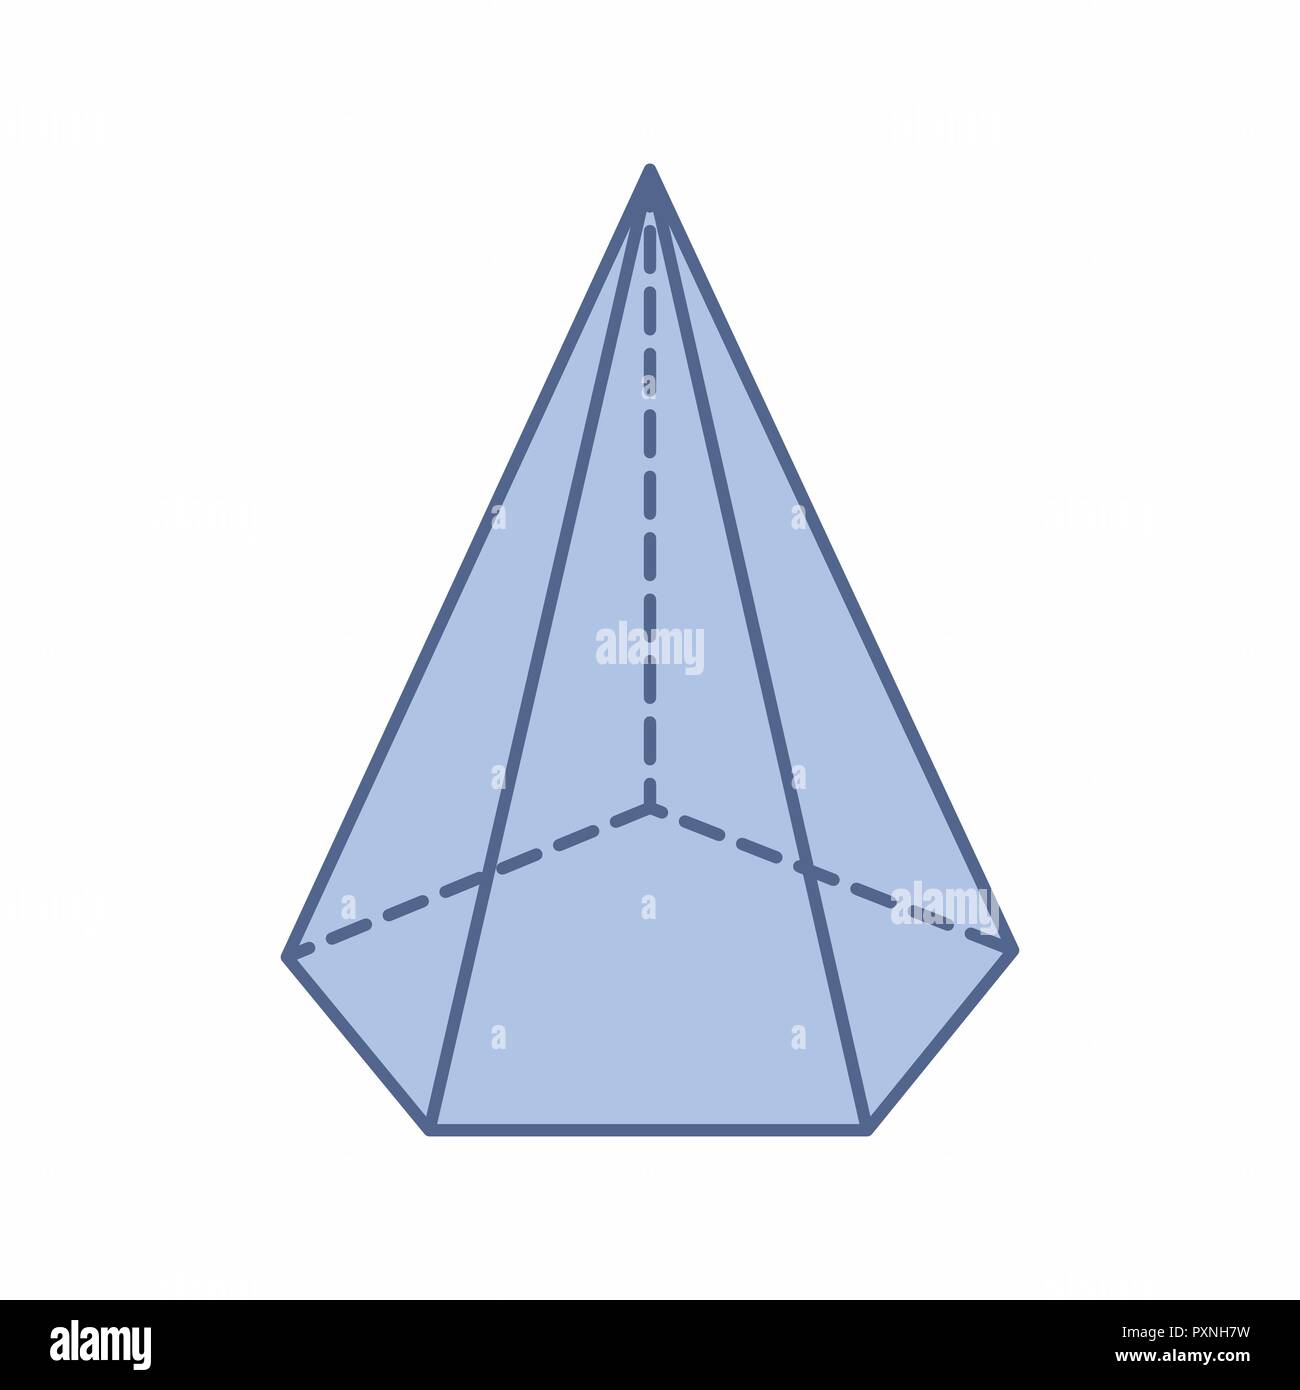 L'illustrazione di un isolato piramide pentagonale su sfondo bianco Illustrazione Vettoriale